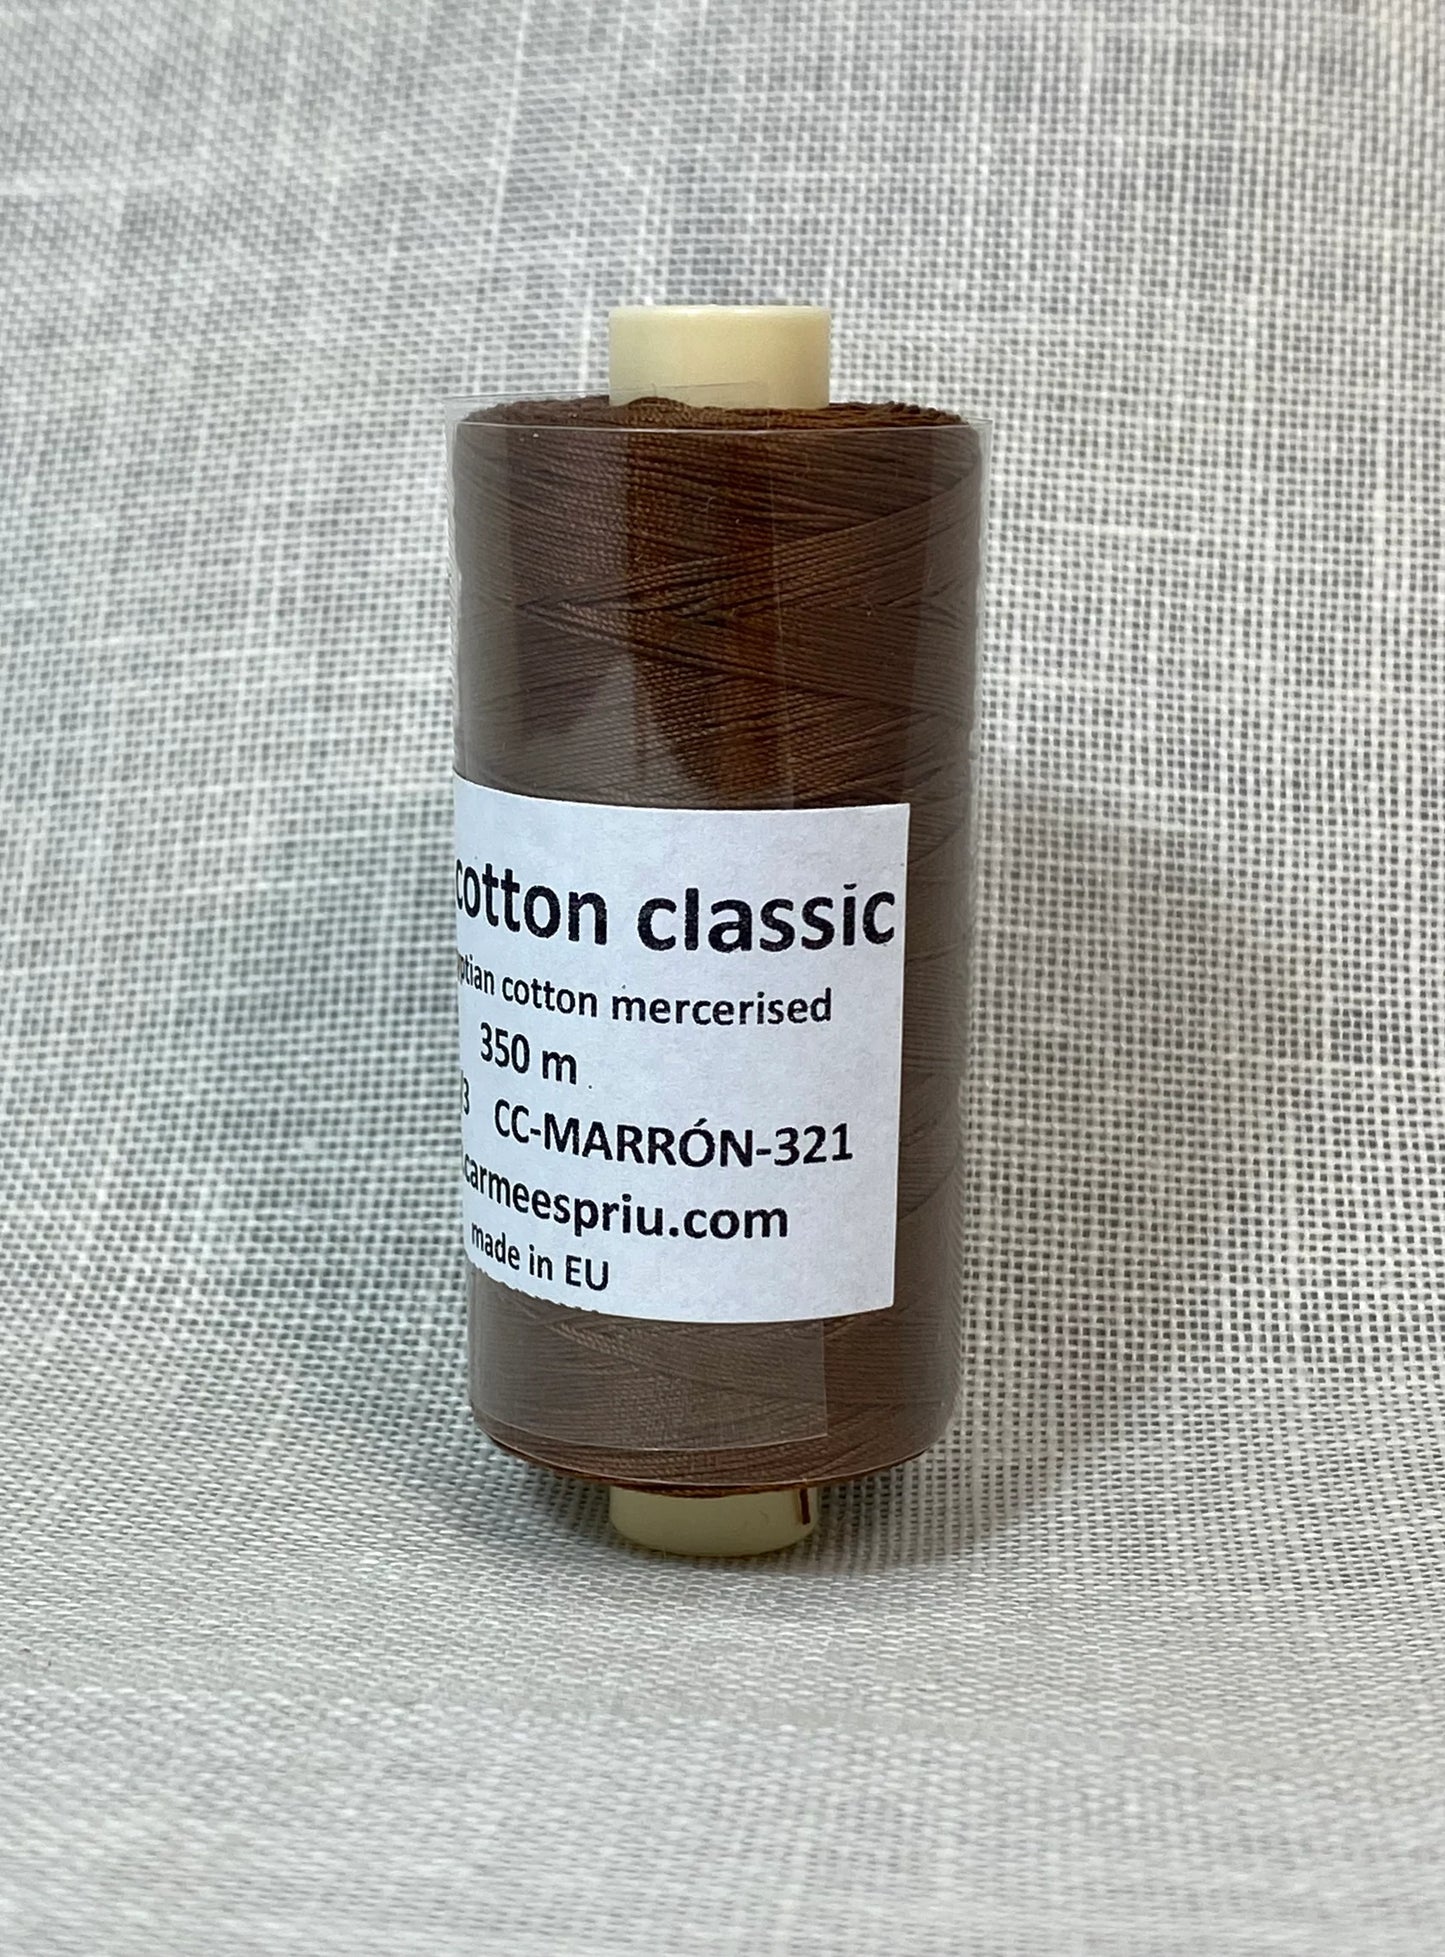 Basic cotton classic nº 321